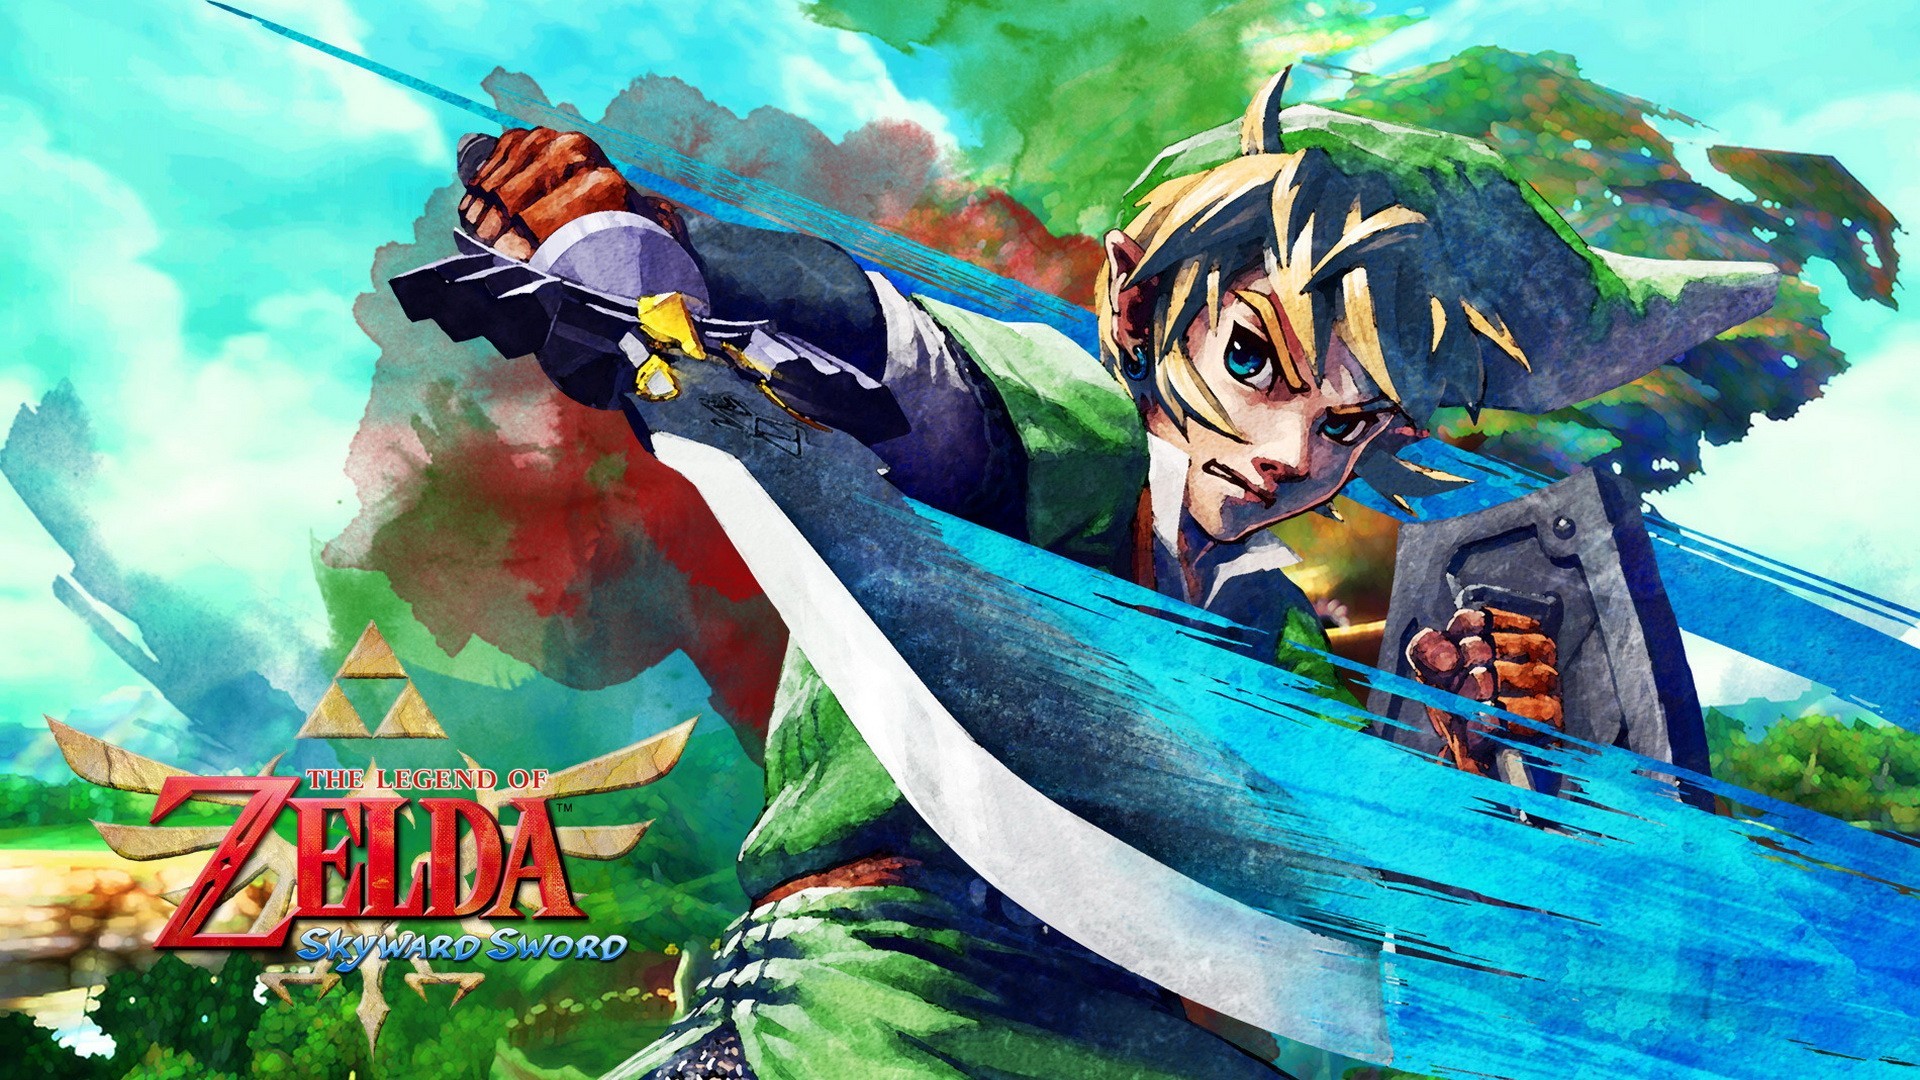 General 1920x1080 the legend of zelda: skyward sword Link Master Sword The Legend of Zelda video games video game art sword shield